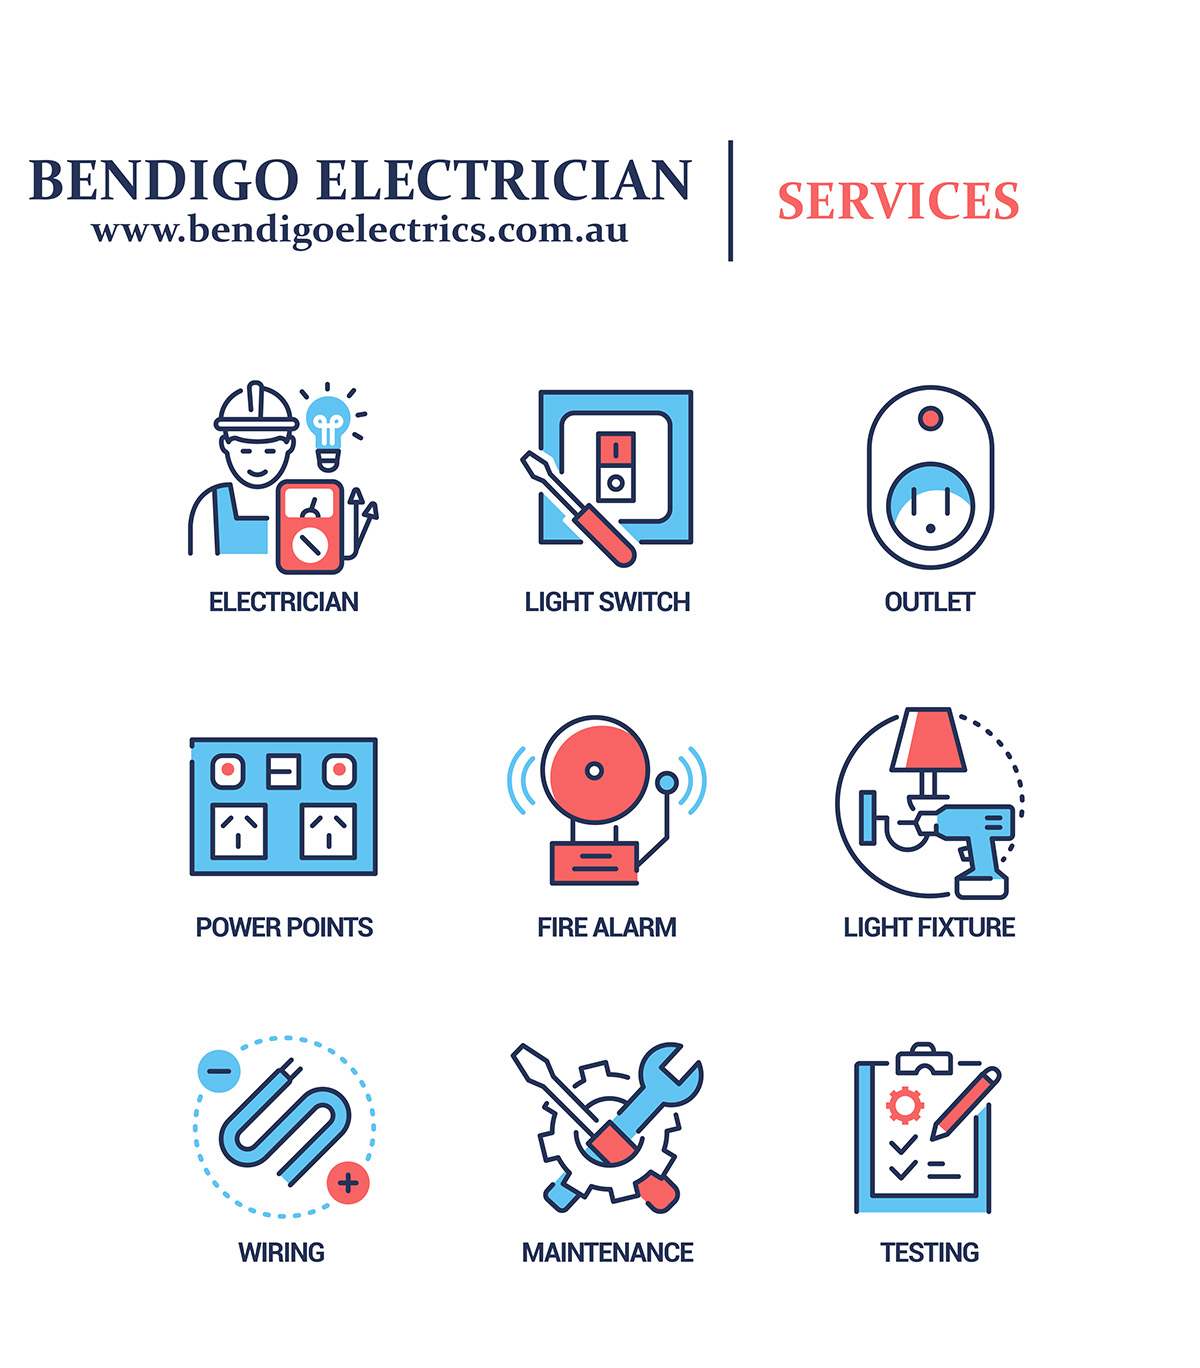 Bendigo-electrics-services-infographic.jpg